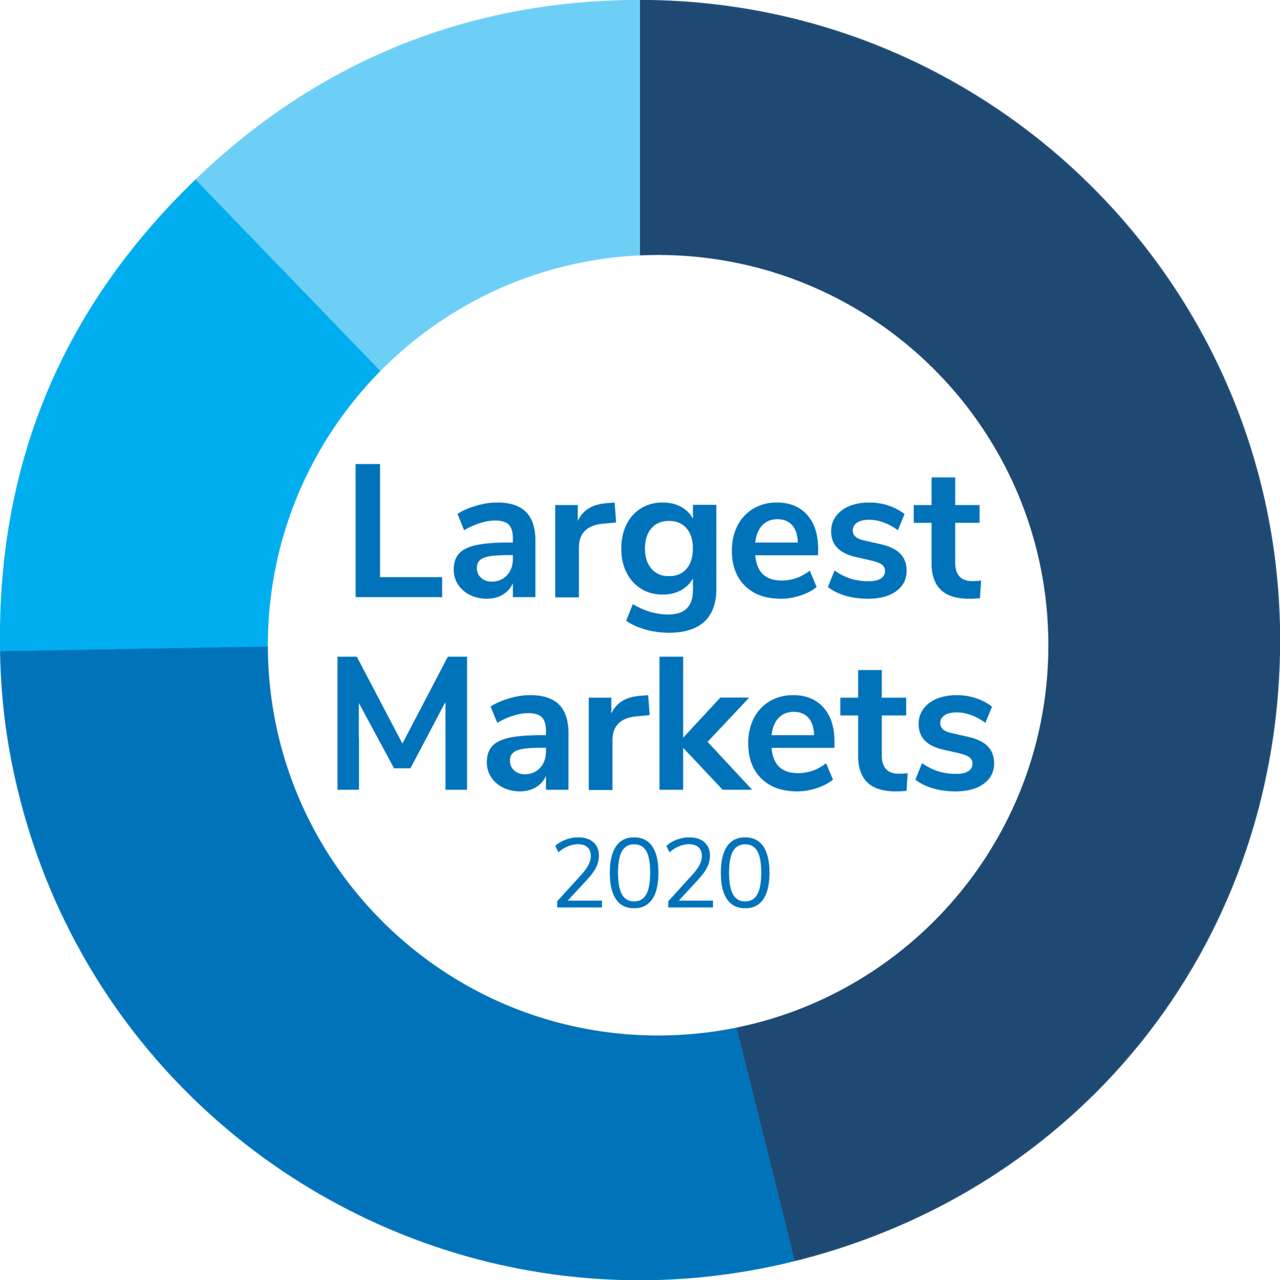 Largest Markets 2020